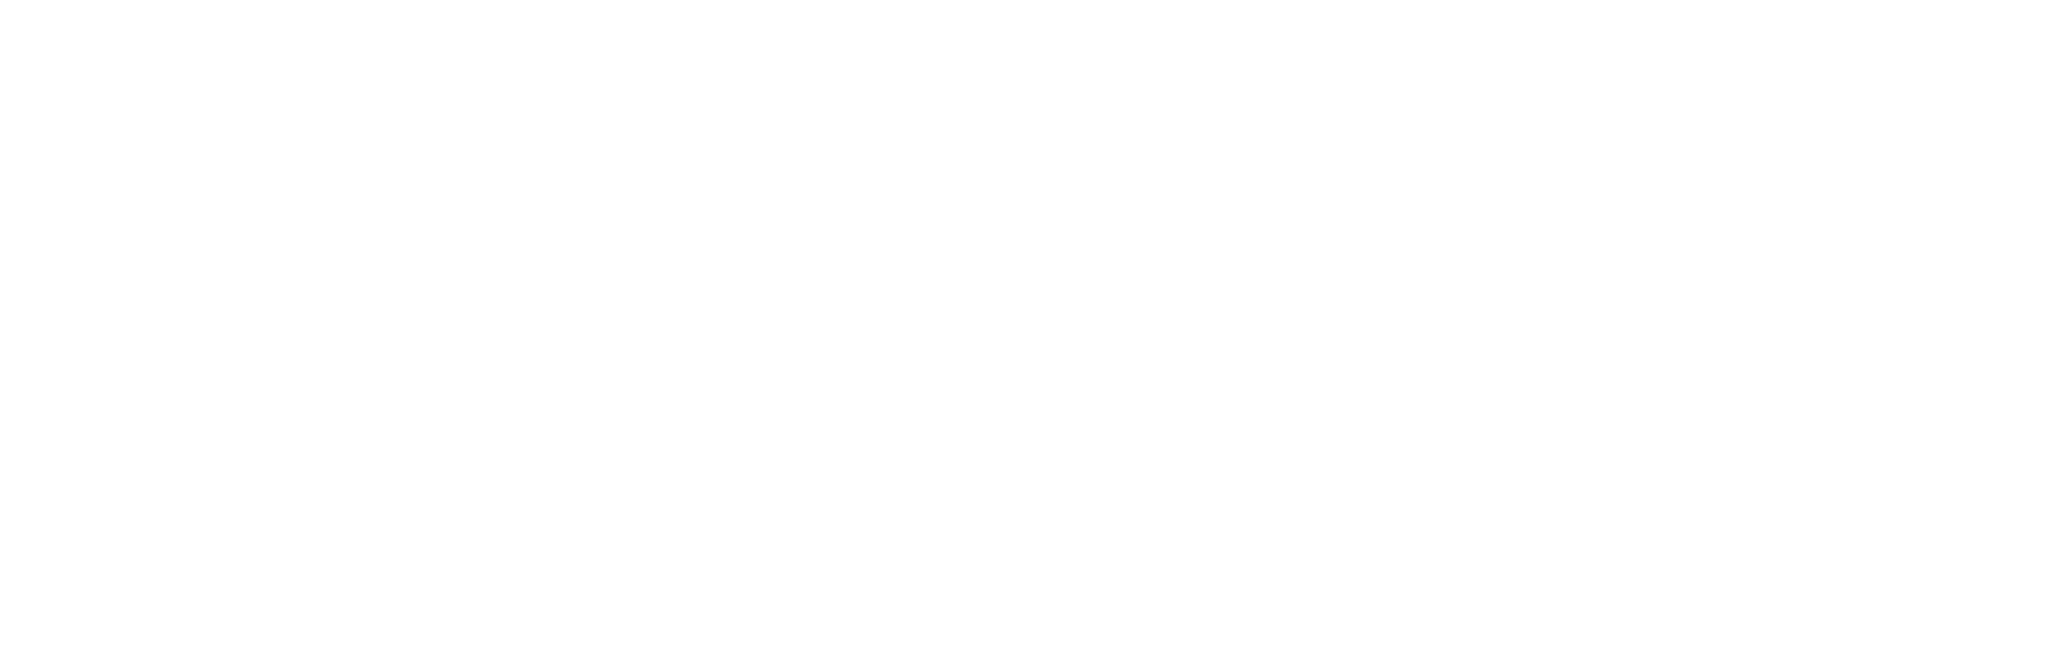 Gripple Automation